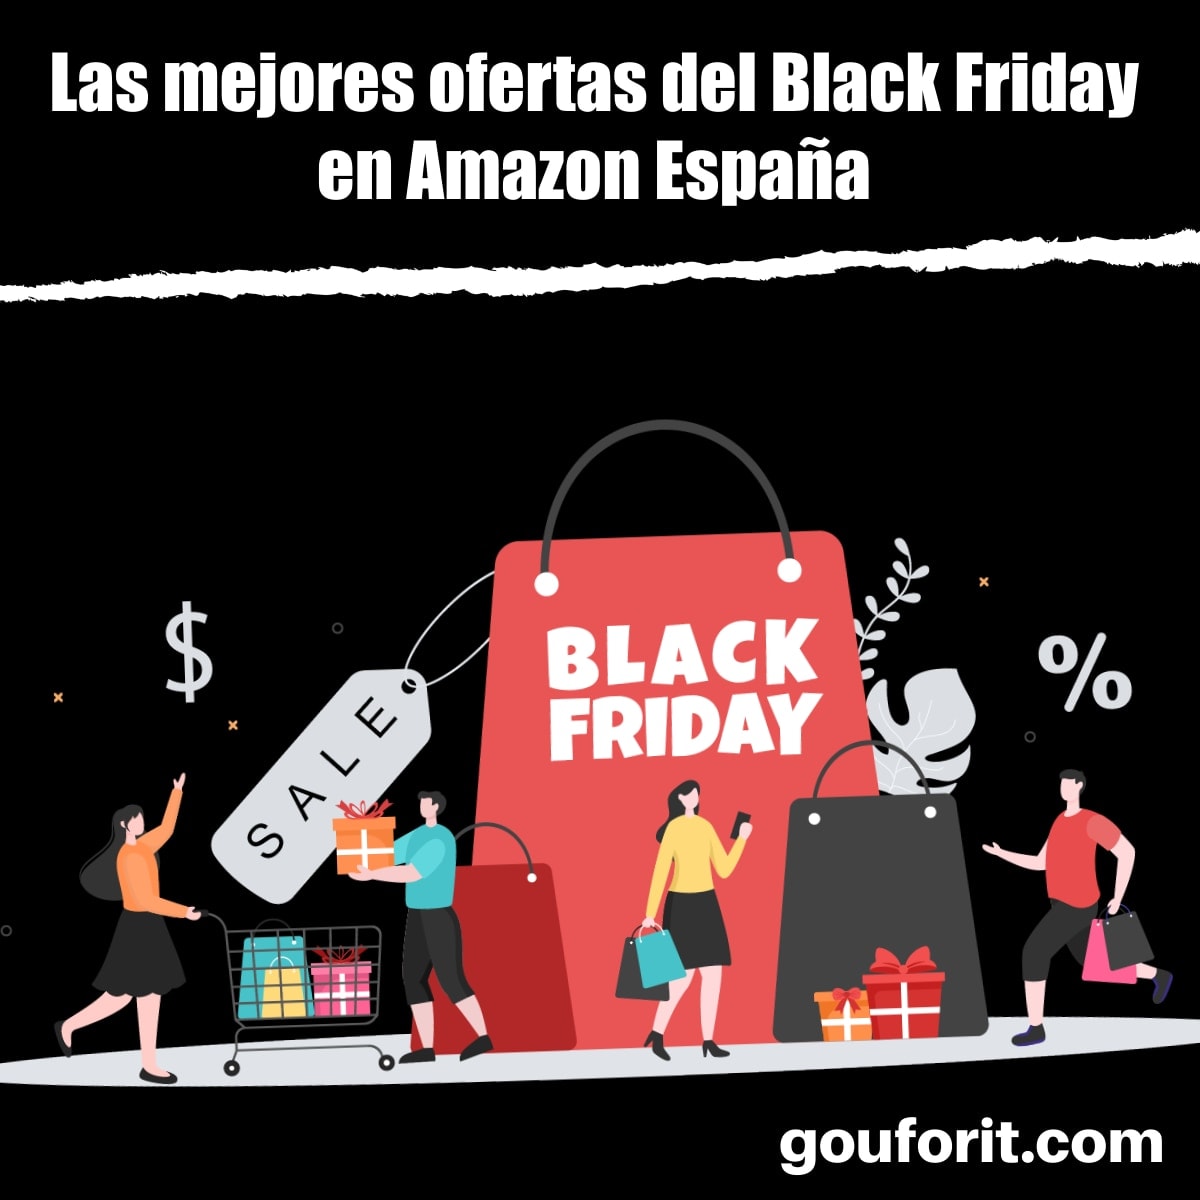 Black 2022 Amazon España: Las mejores ofertas y descuentos